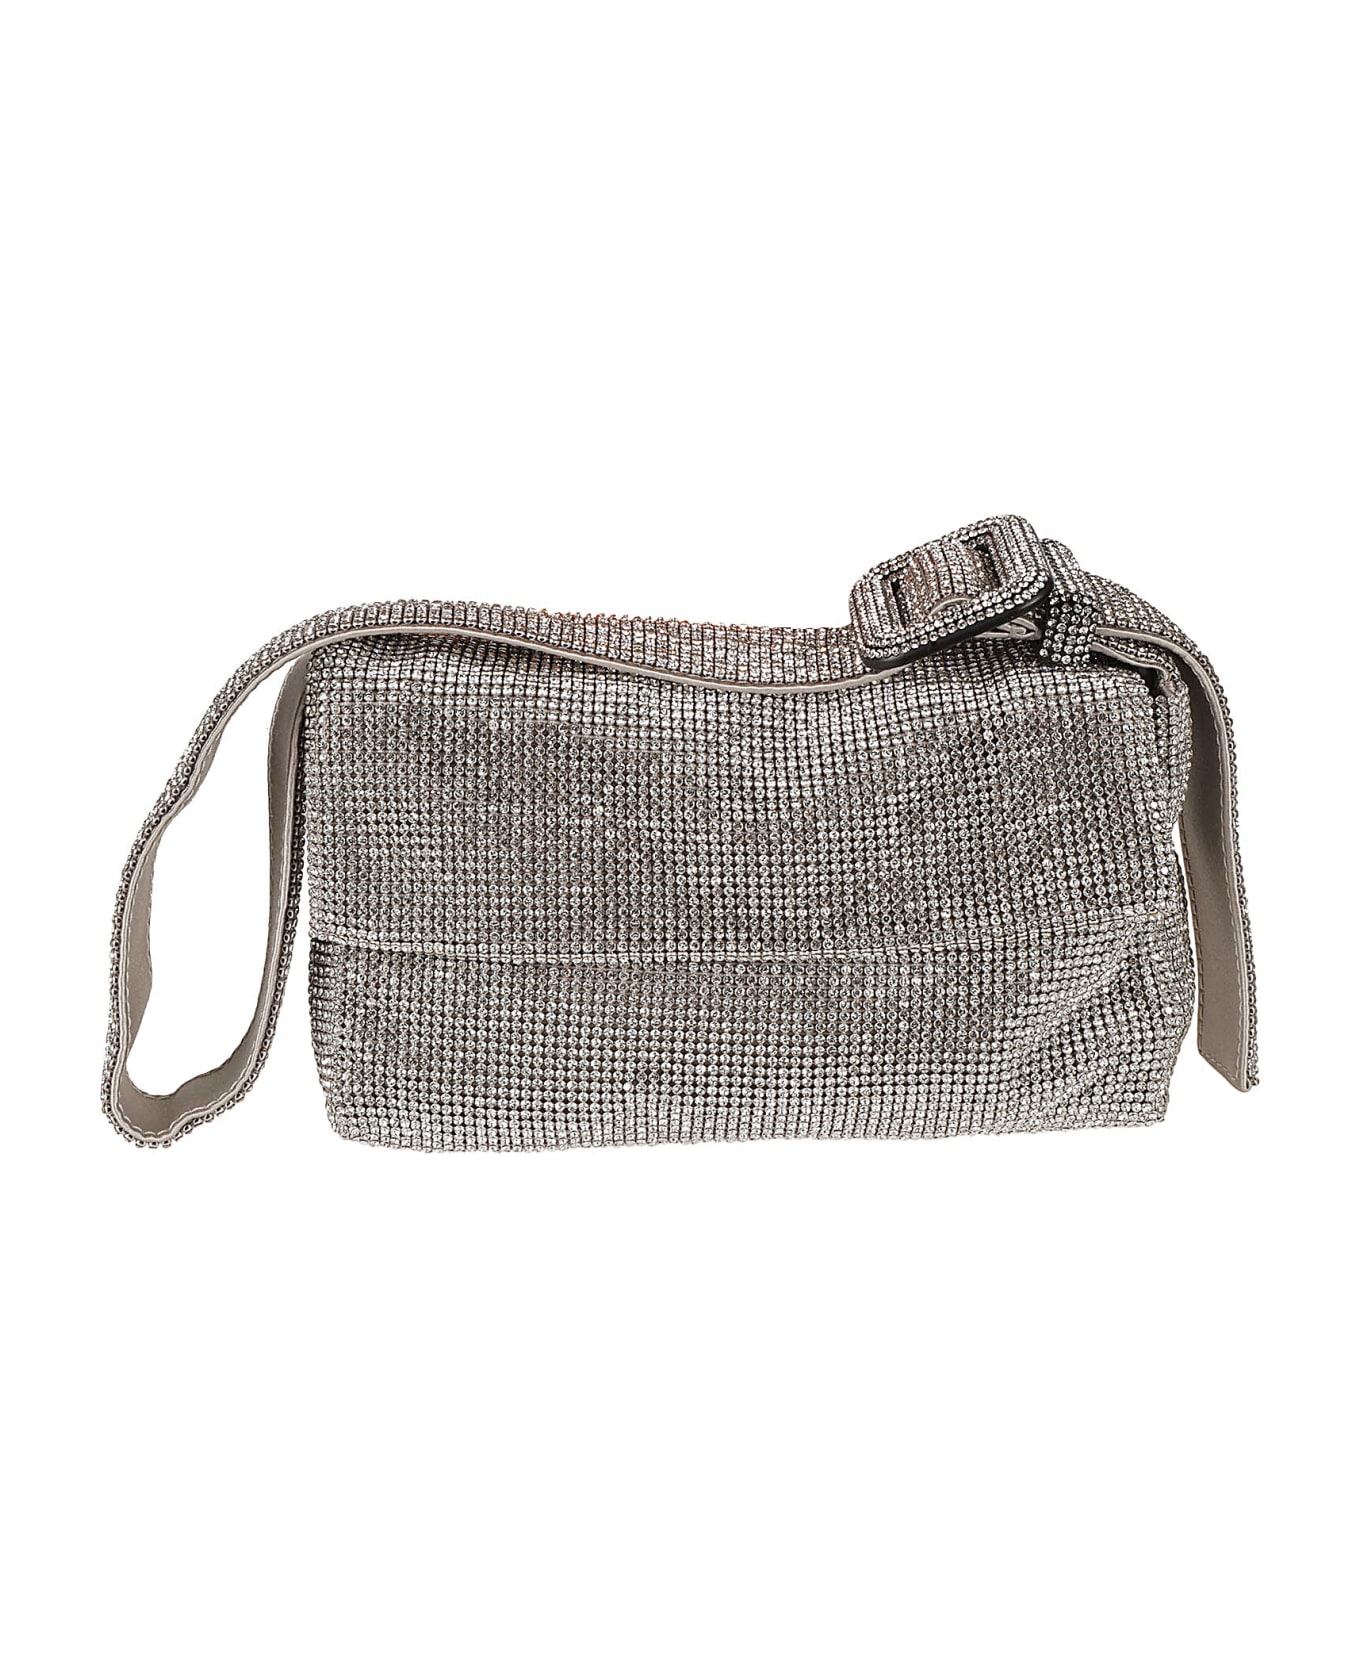 Benedetta Bruzziches Embellished Shoulder Bag - silver クラッチバッグ